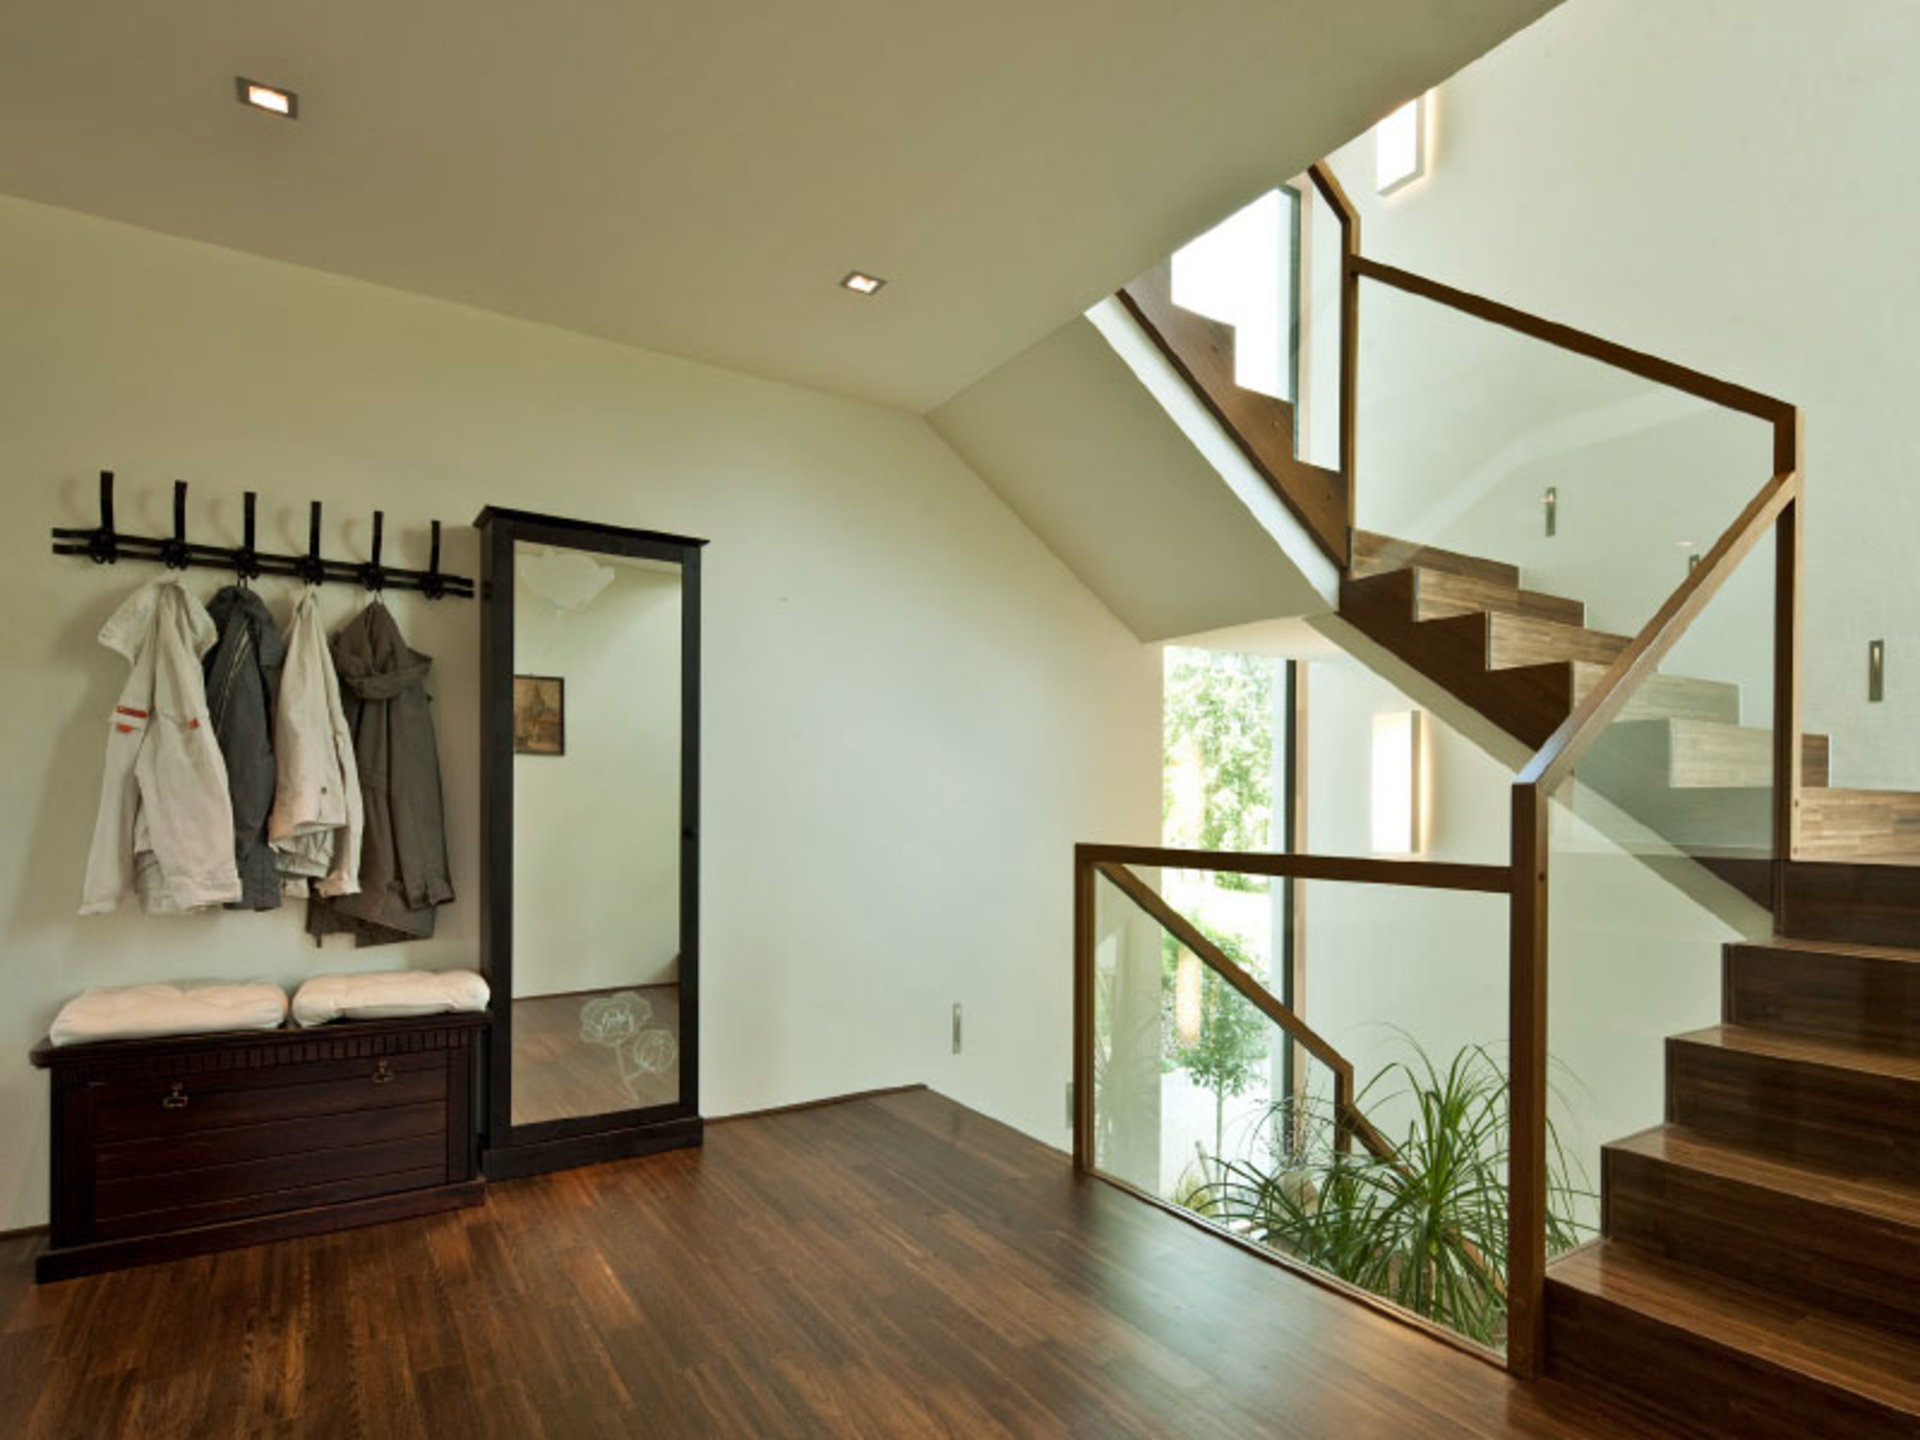 Nicht nur ein "Druchgangszimmer": Haus Collmann macht den Flur zum eigenen Raum mit Wohlfühlatmosphäre. (Foto: BAUMEISTER-HAUS)